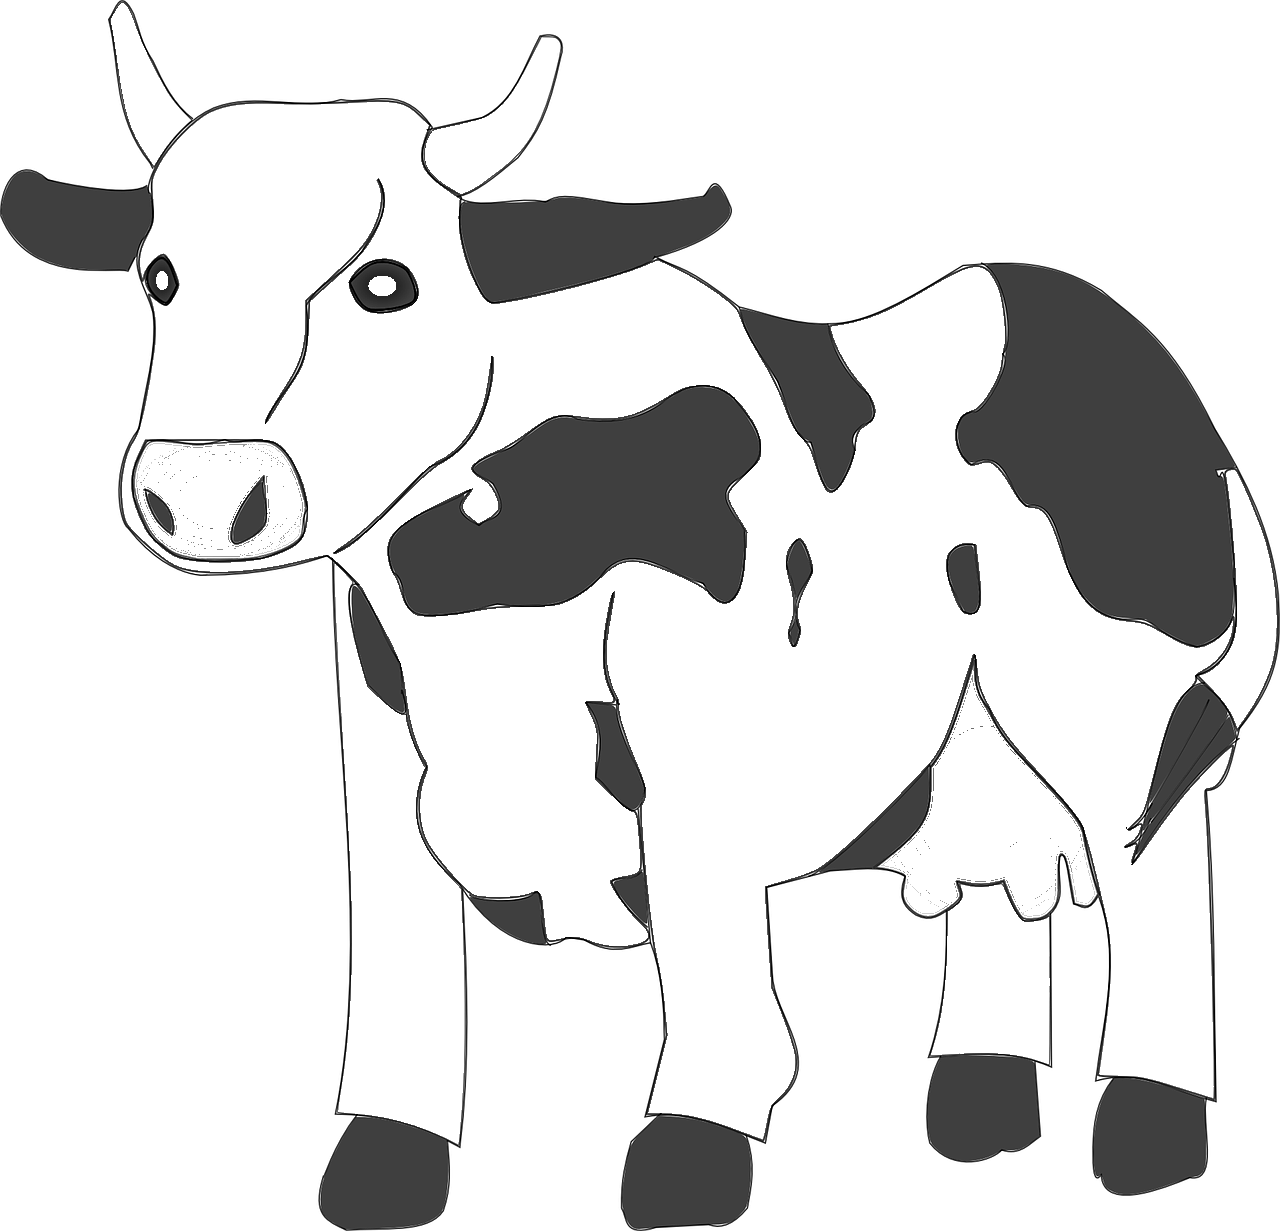 Disegno da colorare di mucca semplice